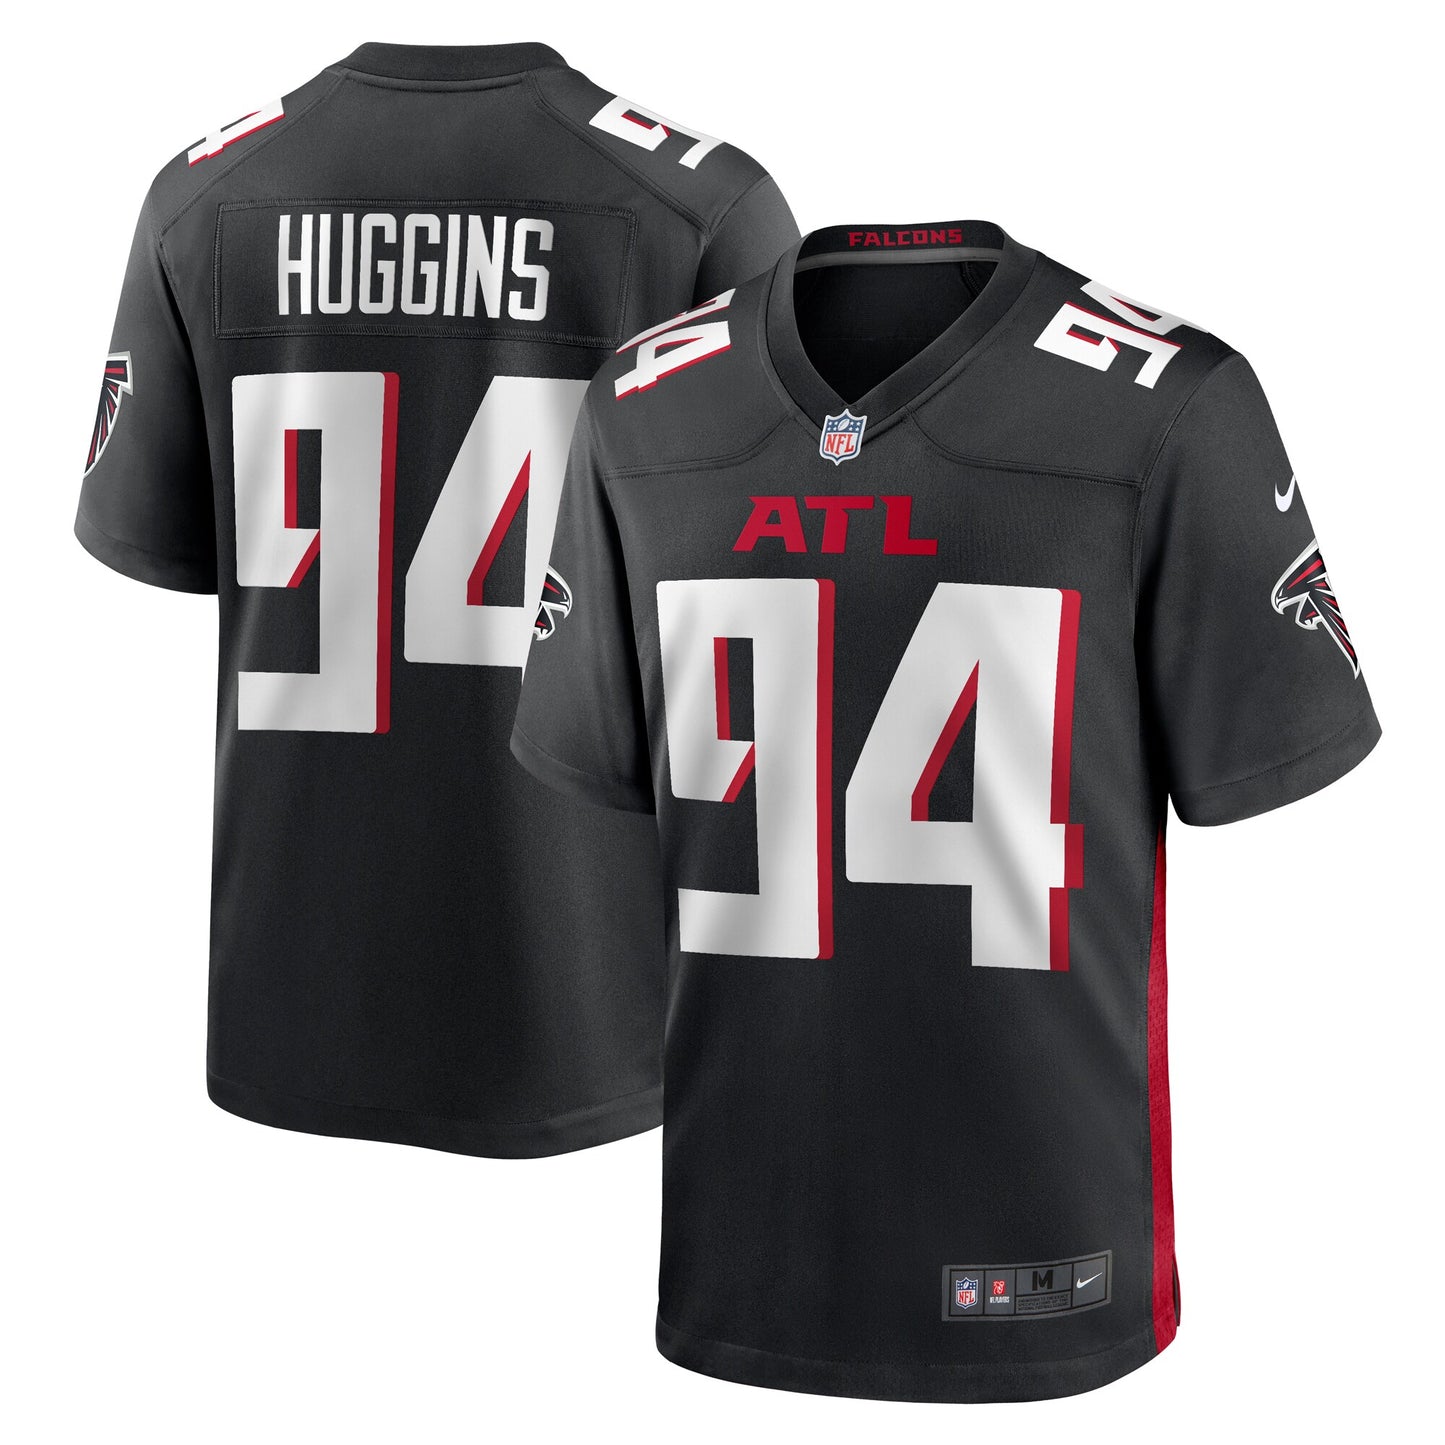 Albert Huggins Atlanta Falcons Nike Team Game Jersey - Black